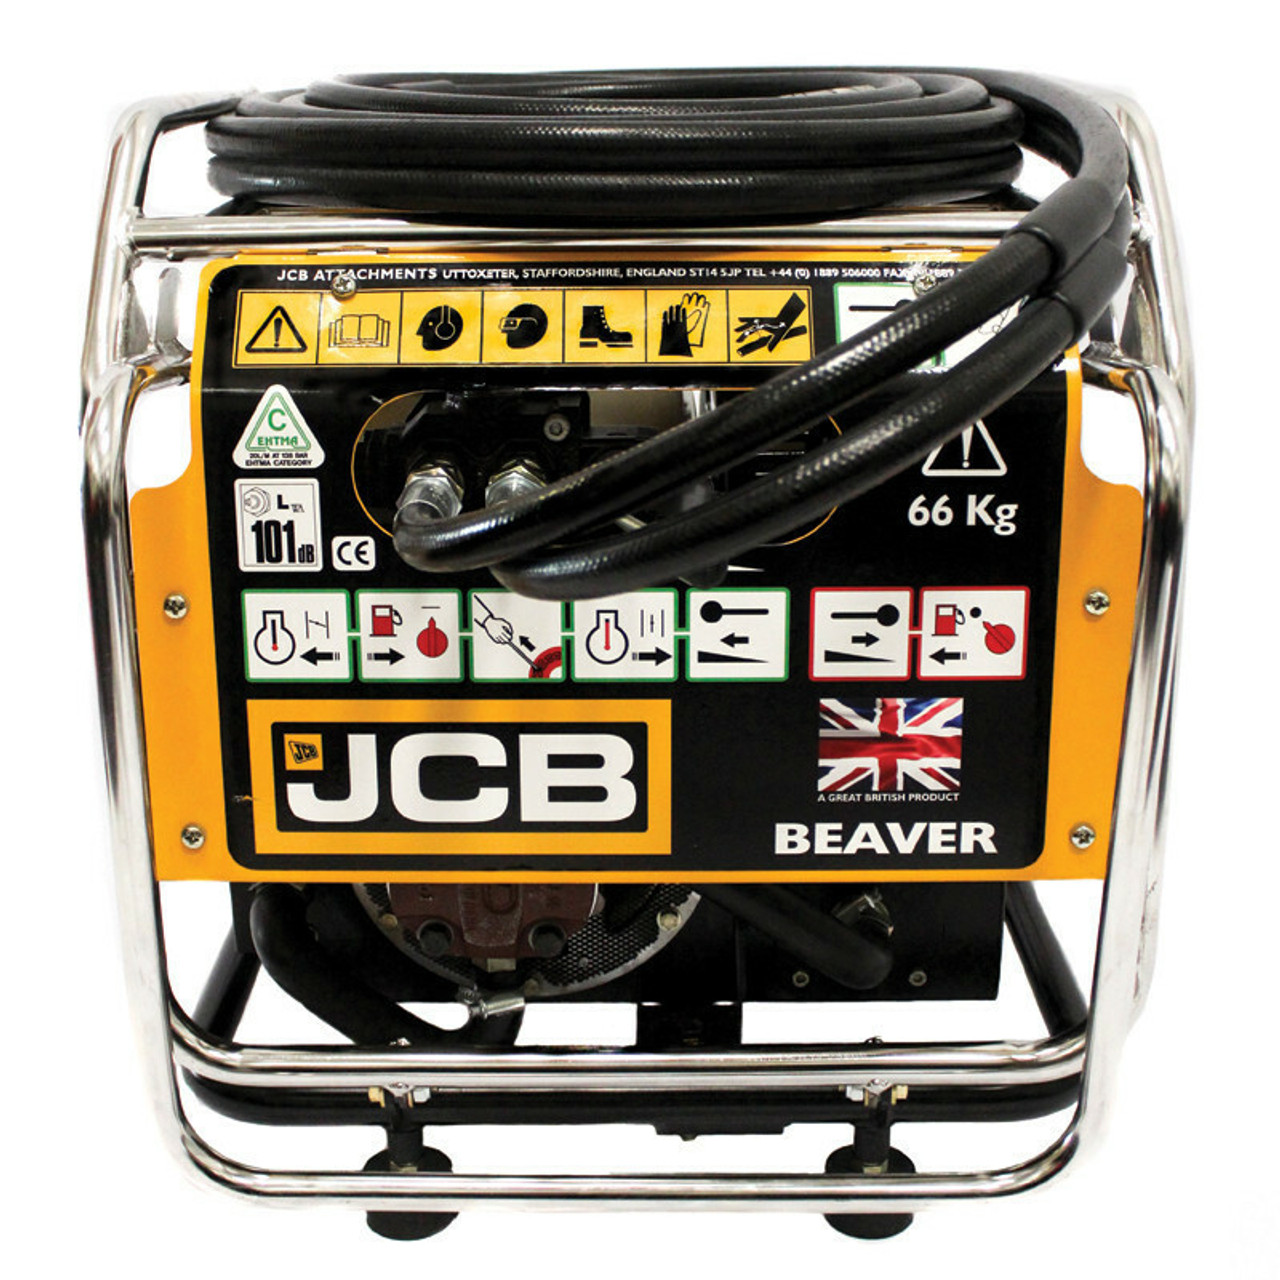 JCB Beaver Power Pack Spares